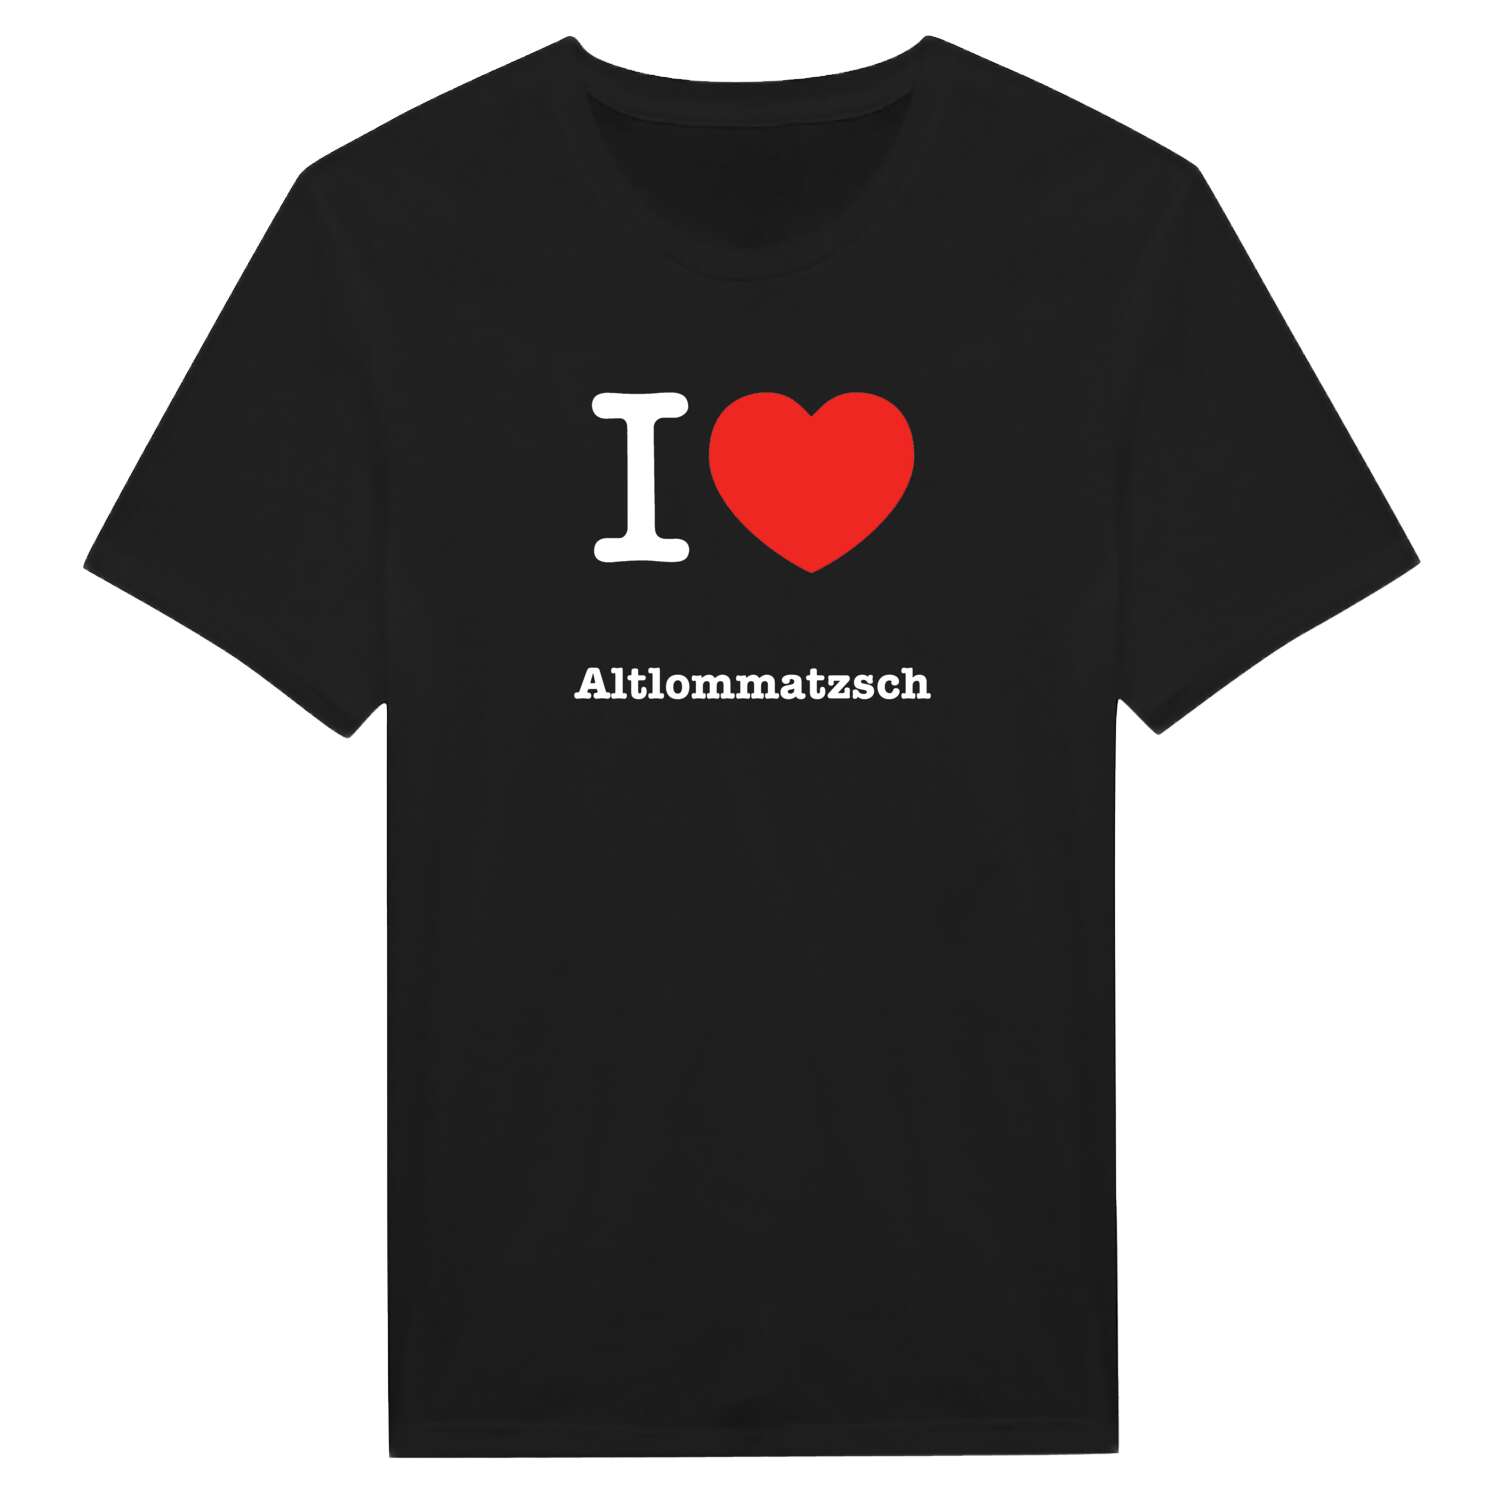 Altlommatzsch T-Shirt »I love«